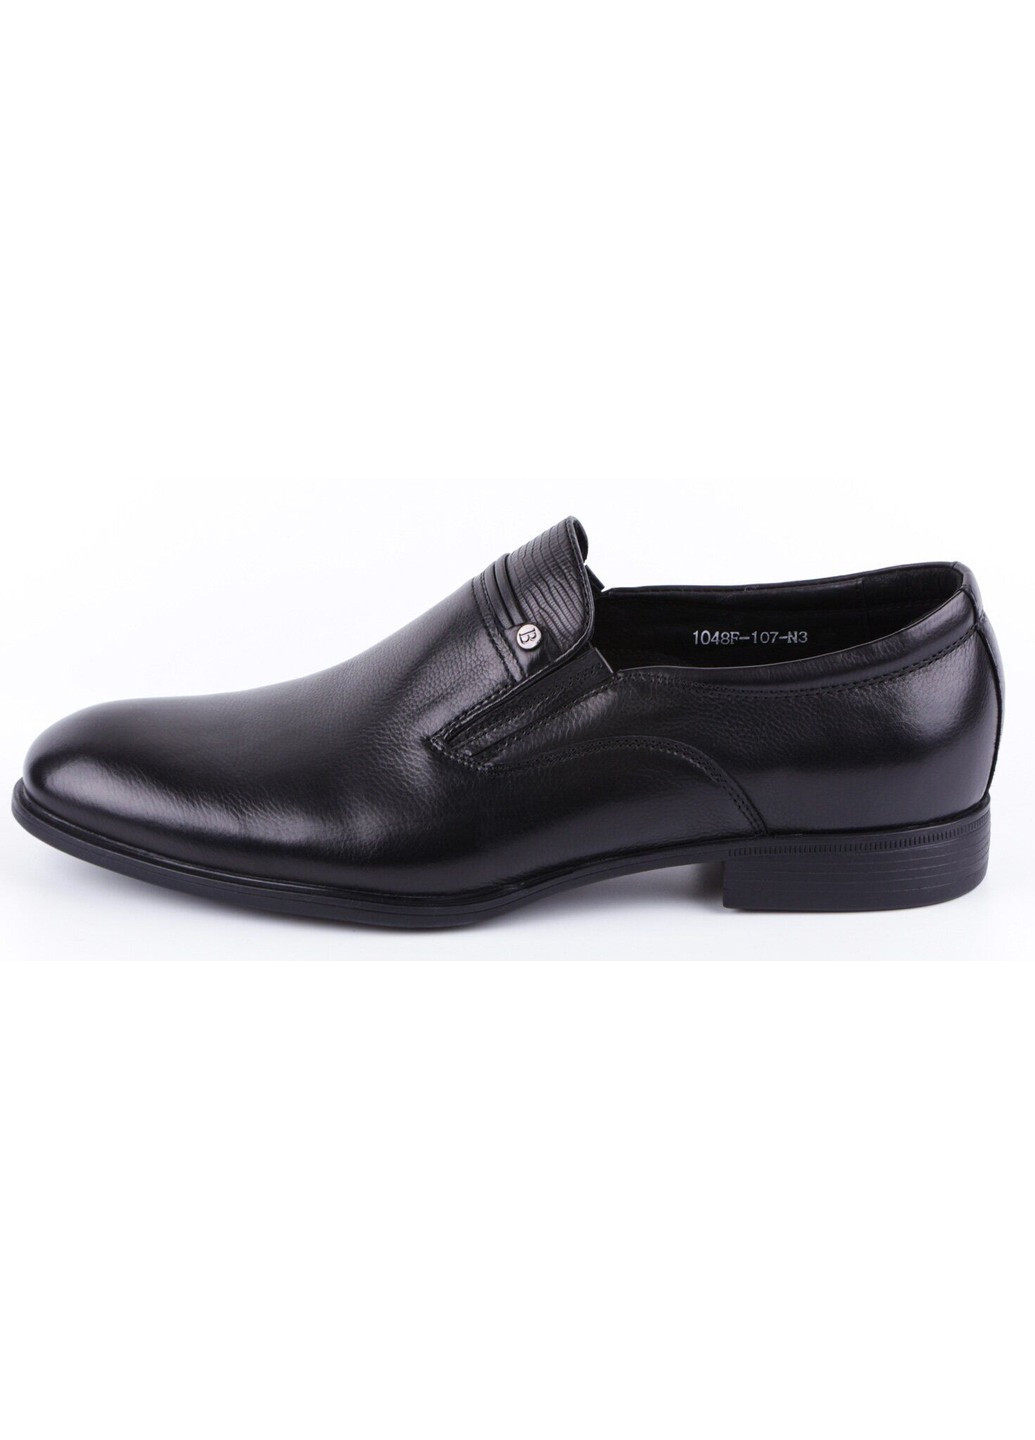 Черные мужские классические туфли 19779 Bazallini без шнурков